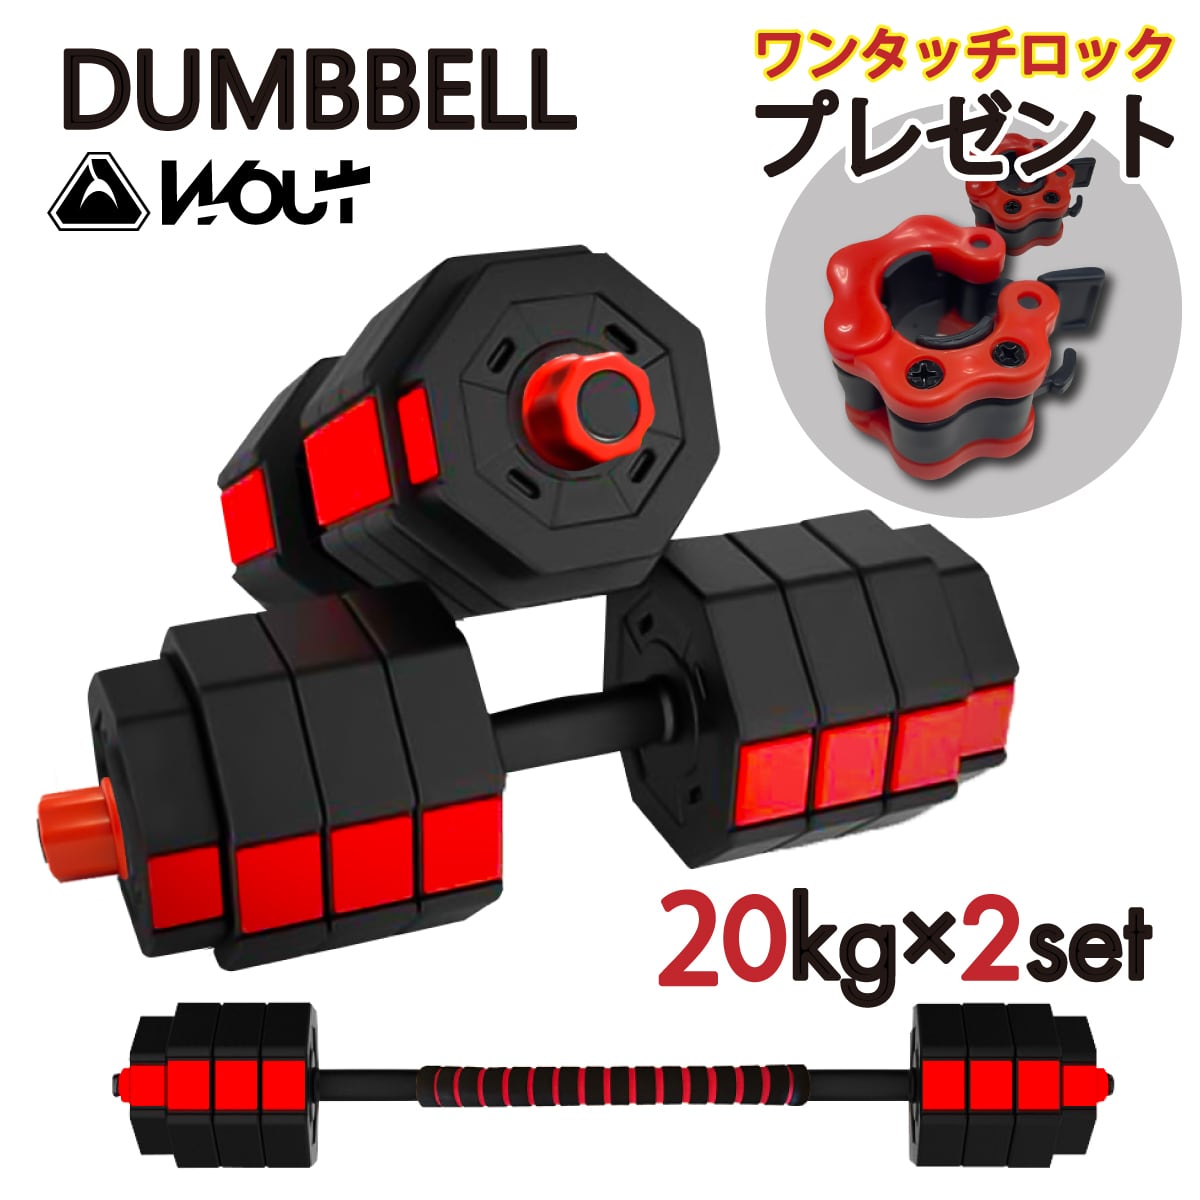 トレーニング/エクササイズ【可変式】 ダンベル 20kg×2